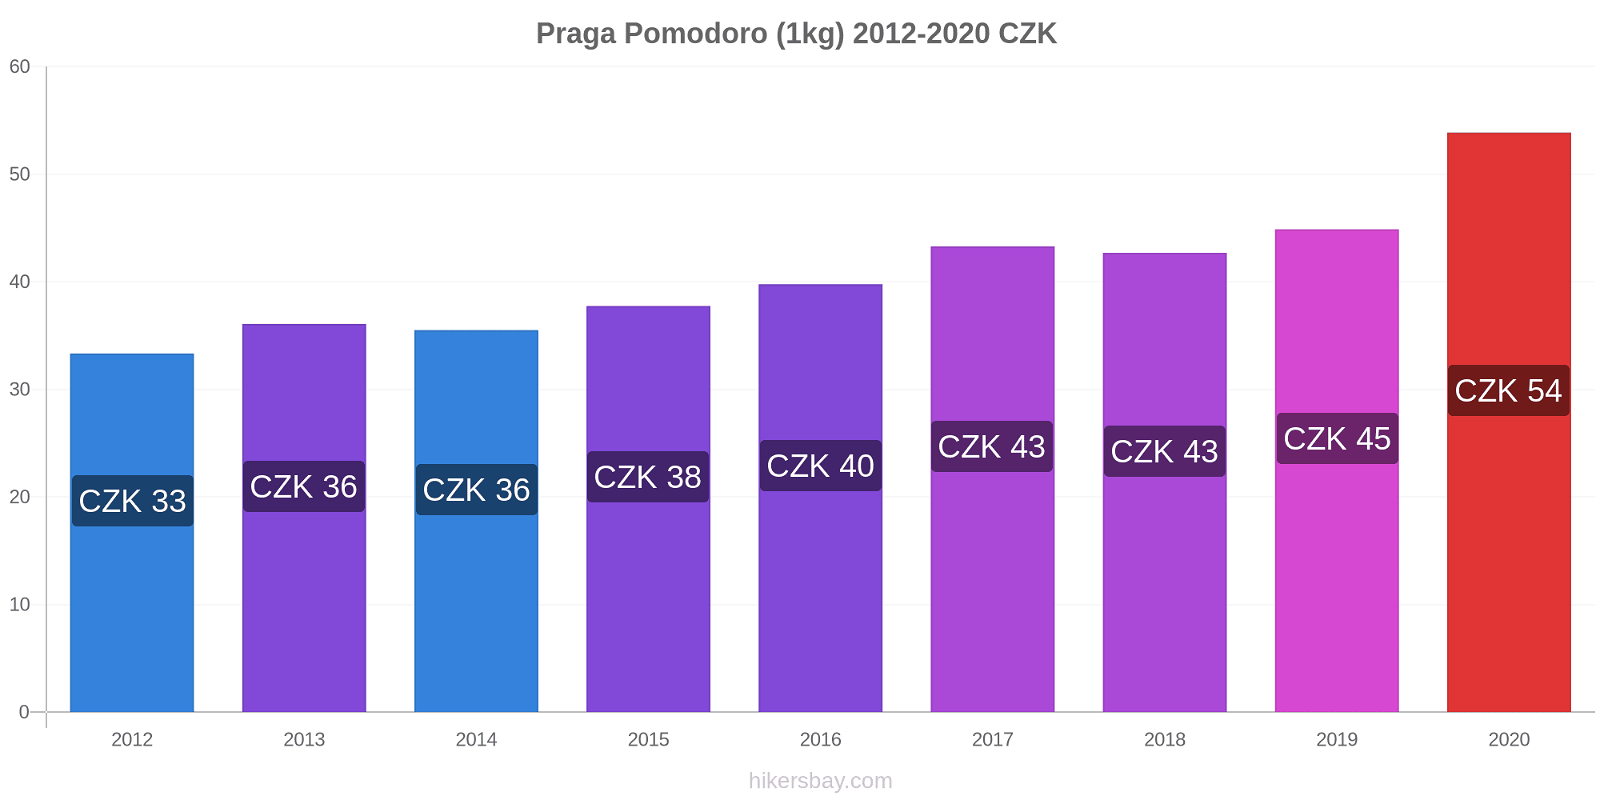 Praga variazioni di prezzo Pomodoro (1kg) hikersbay.com